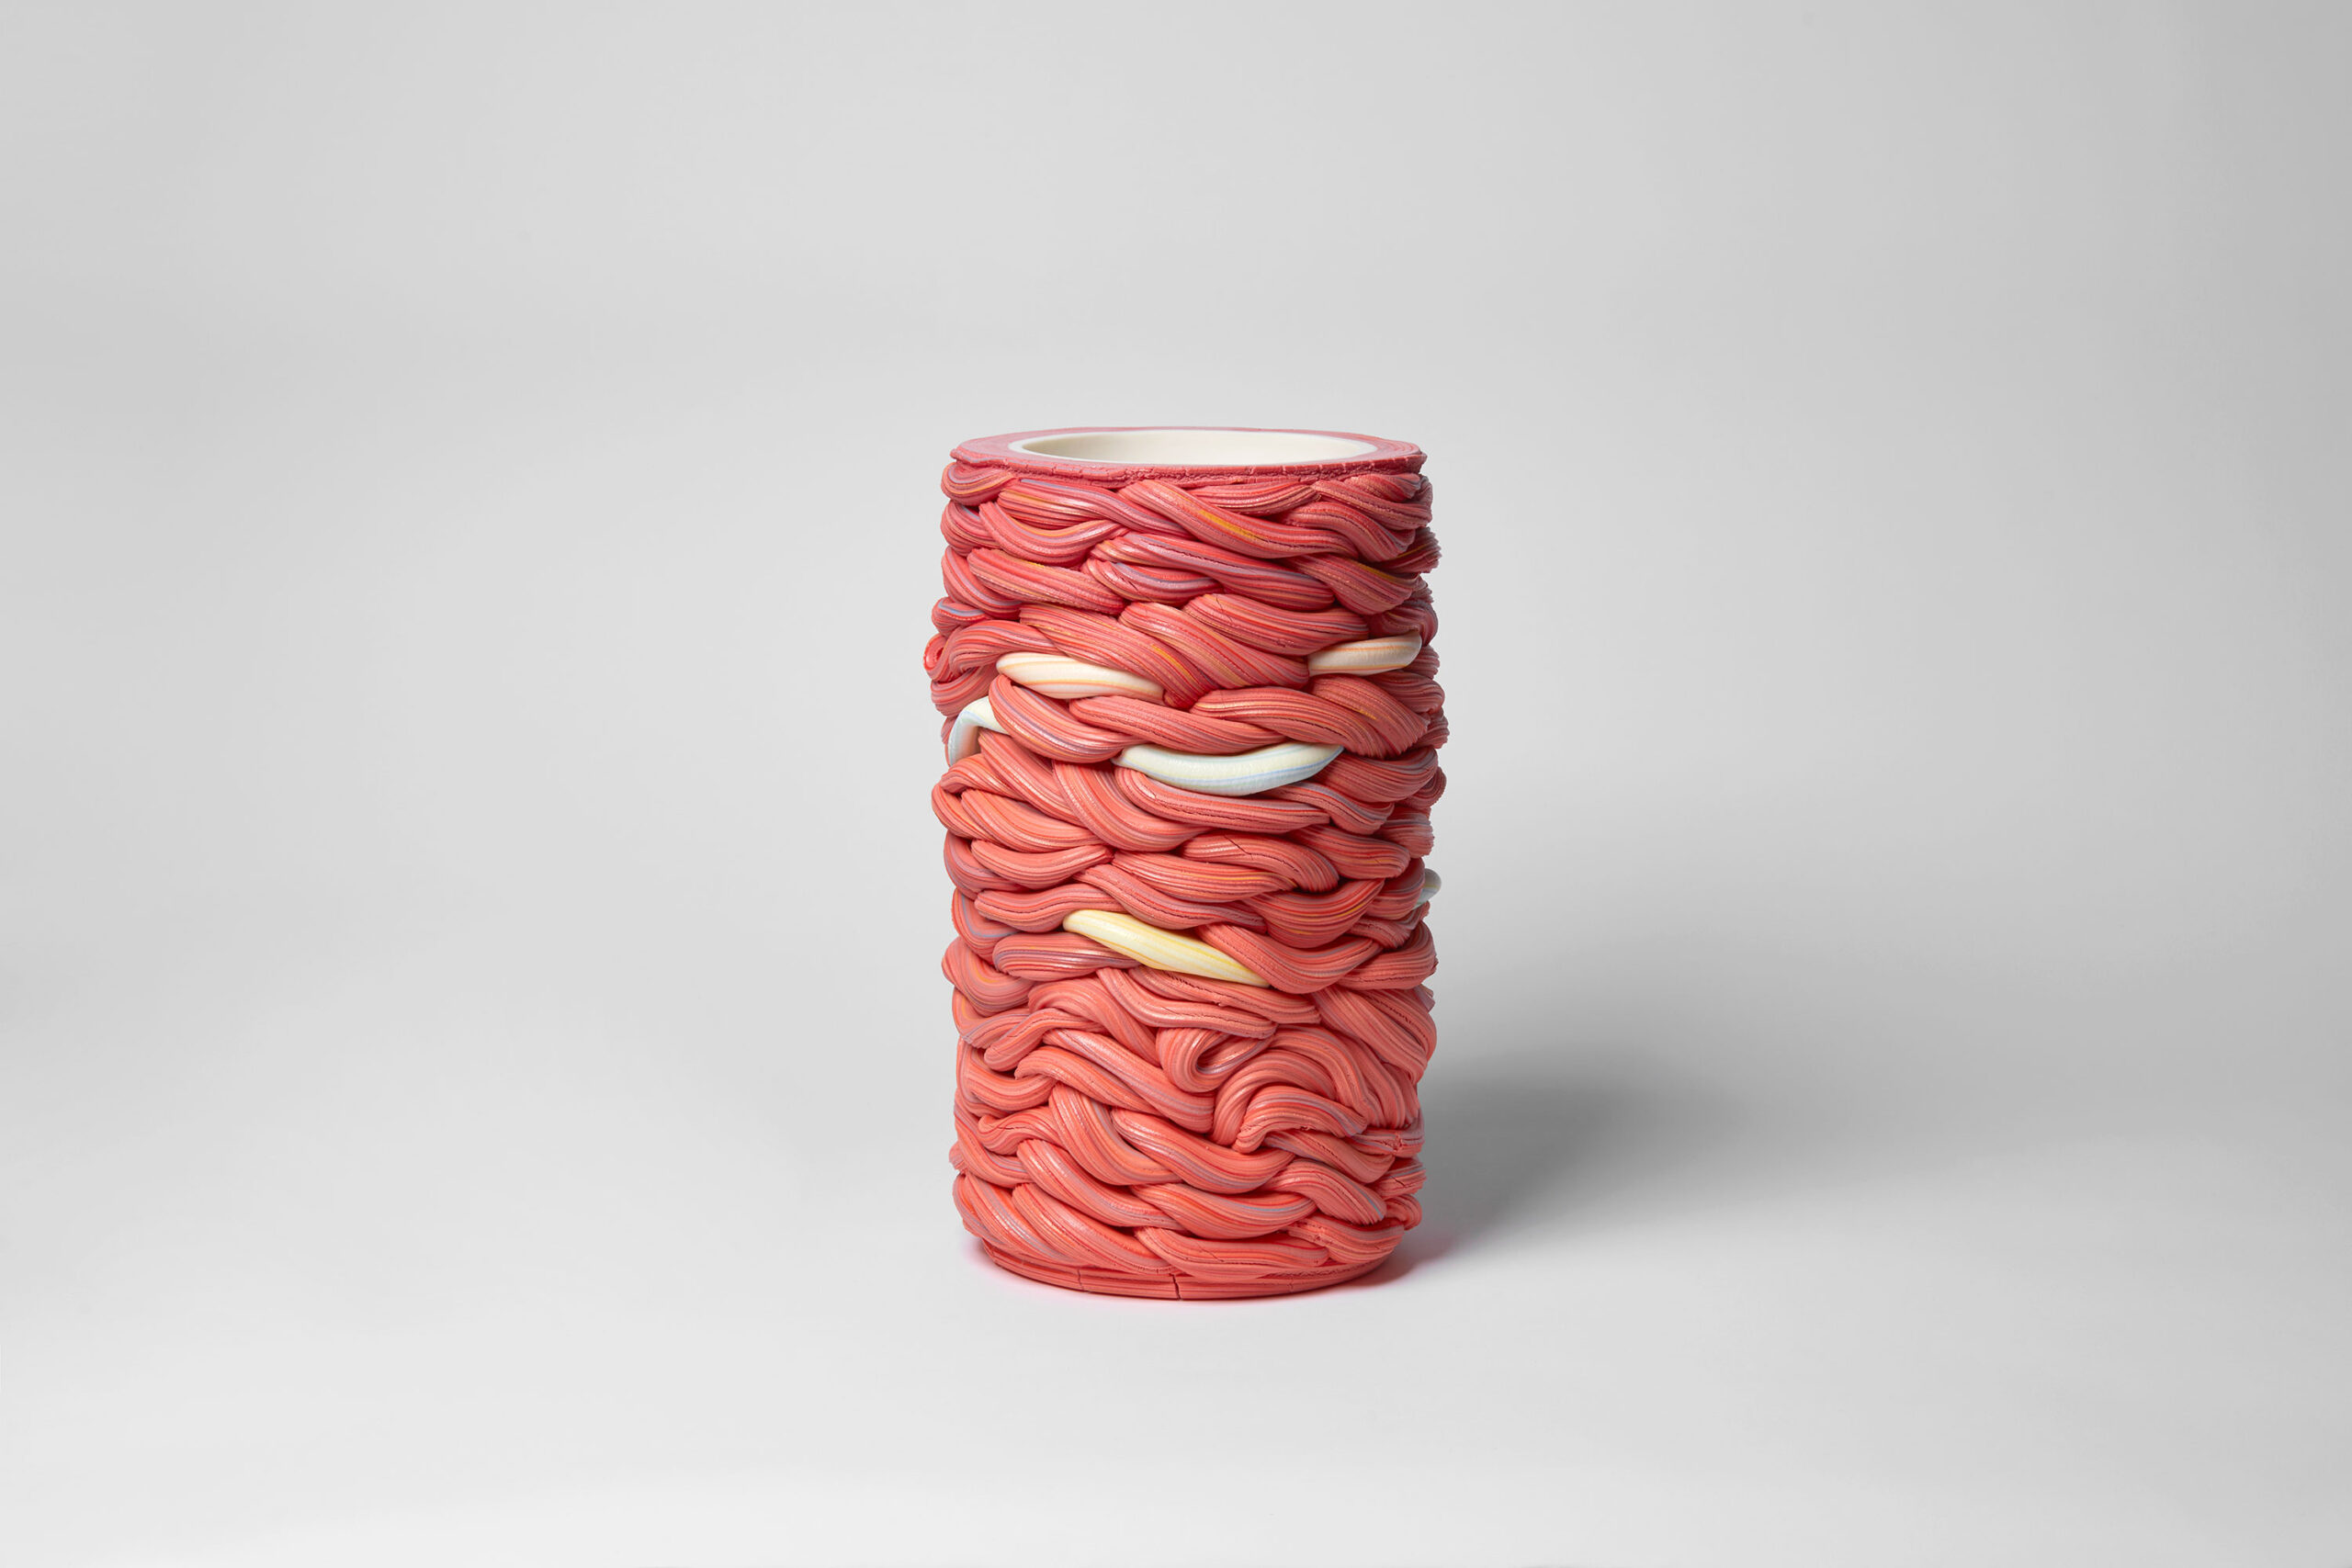 Les ceramiques faconnees comme du chewing-gum de Steven Edwards